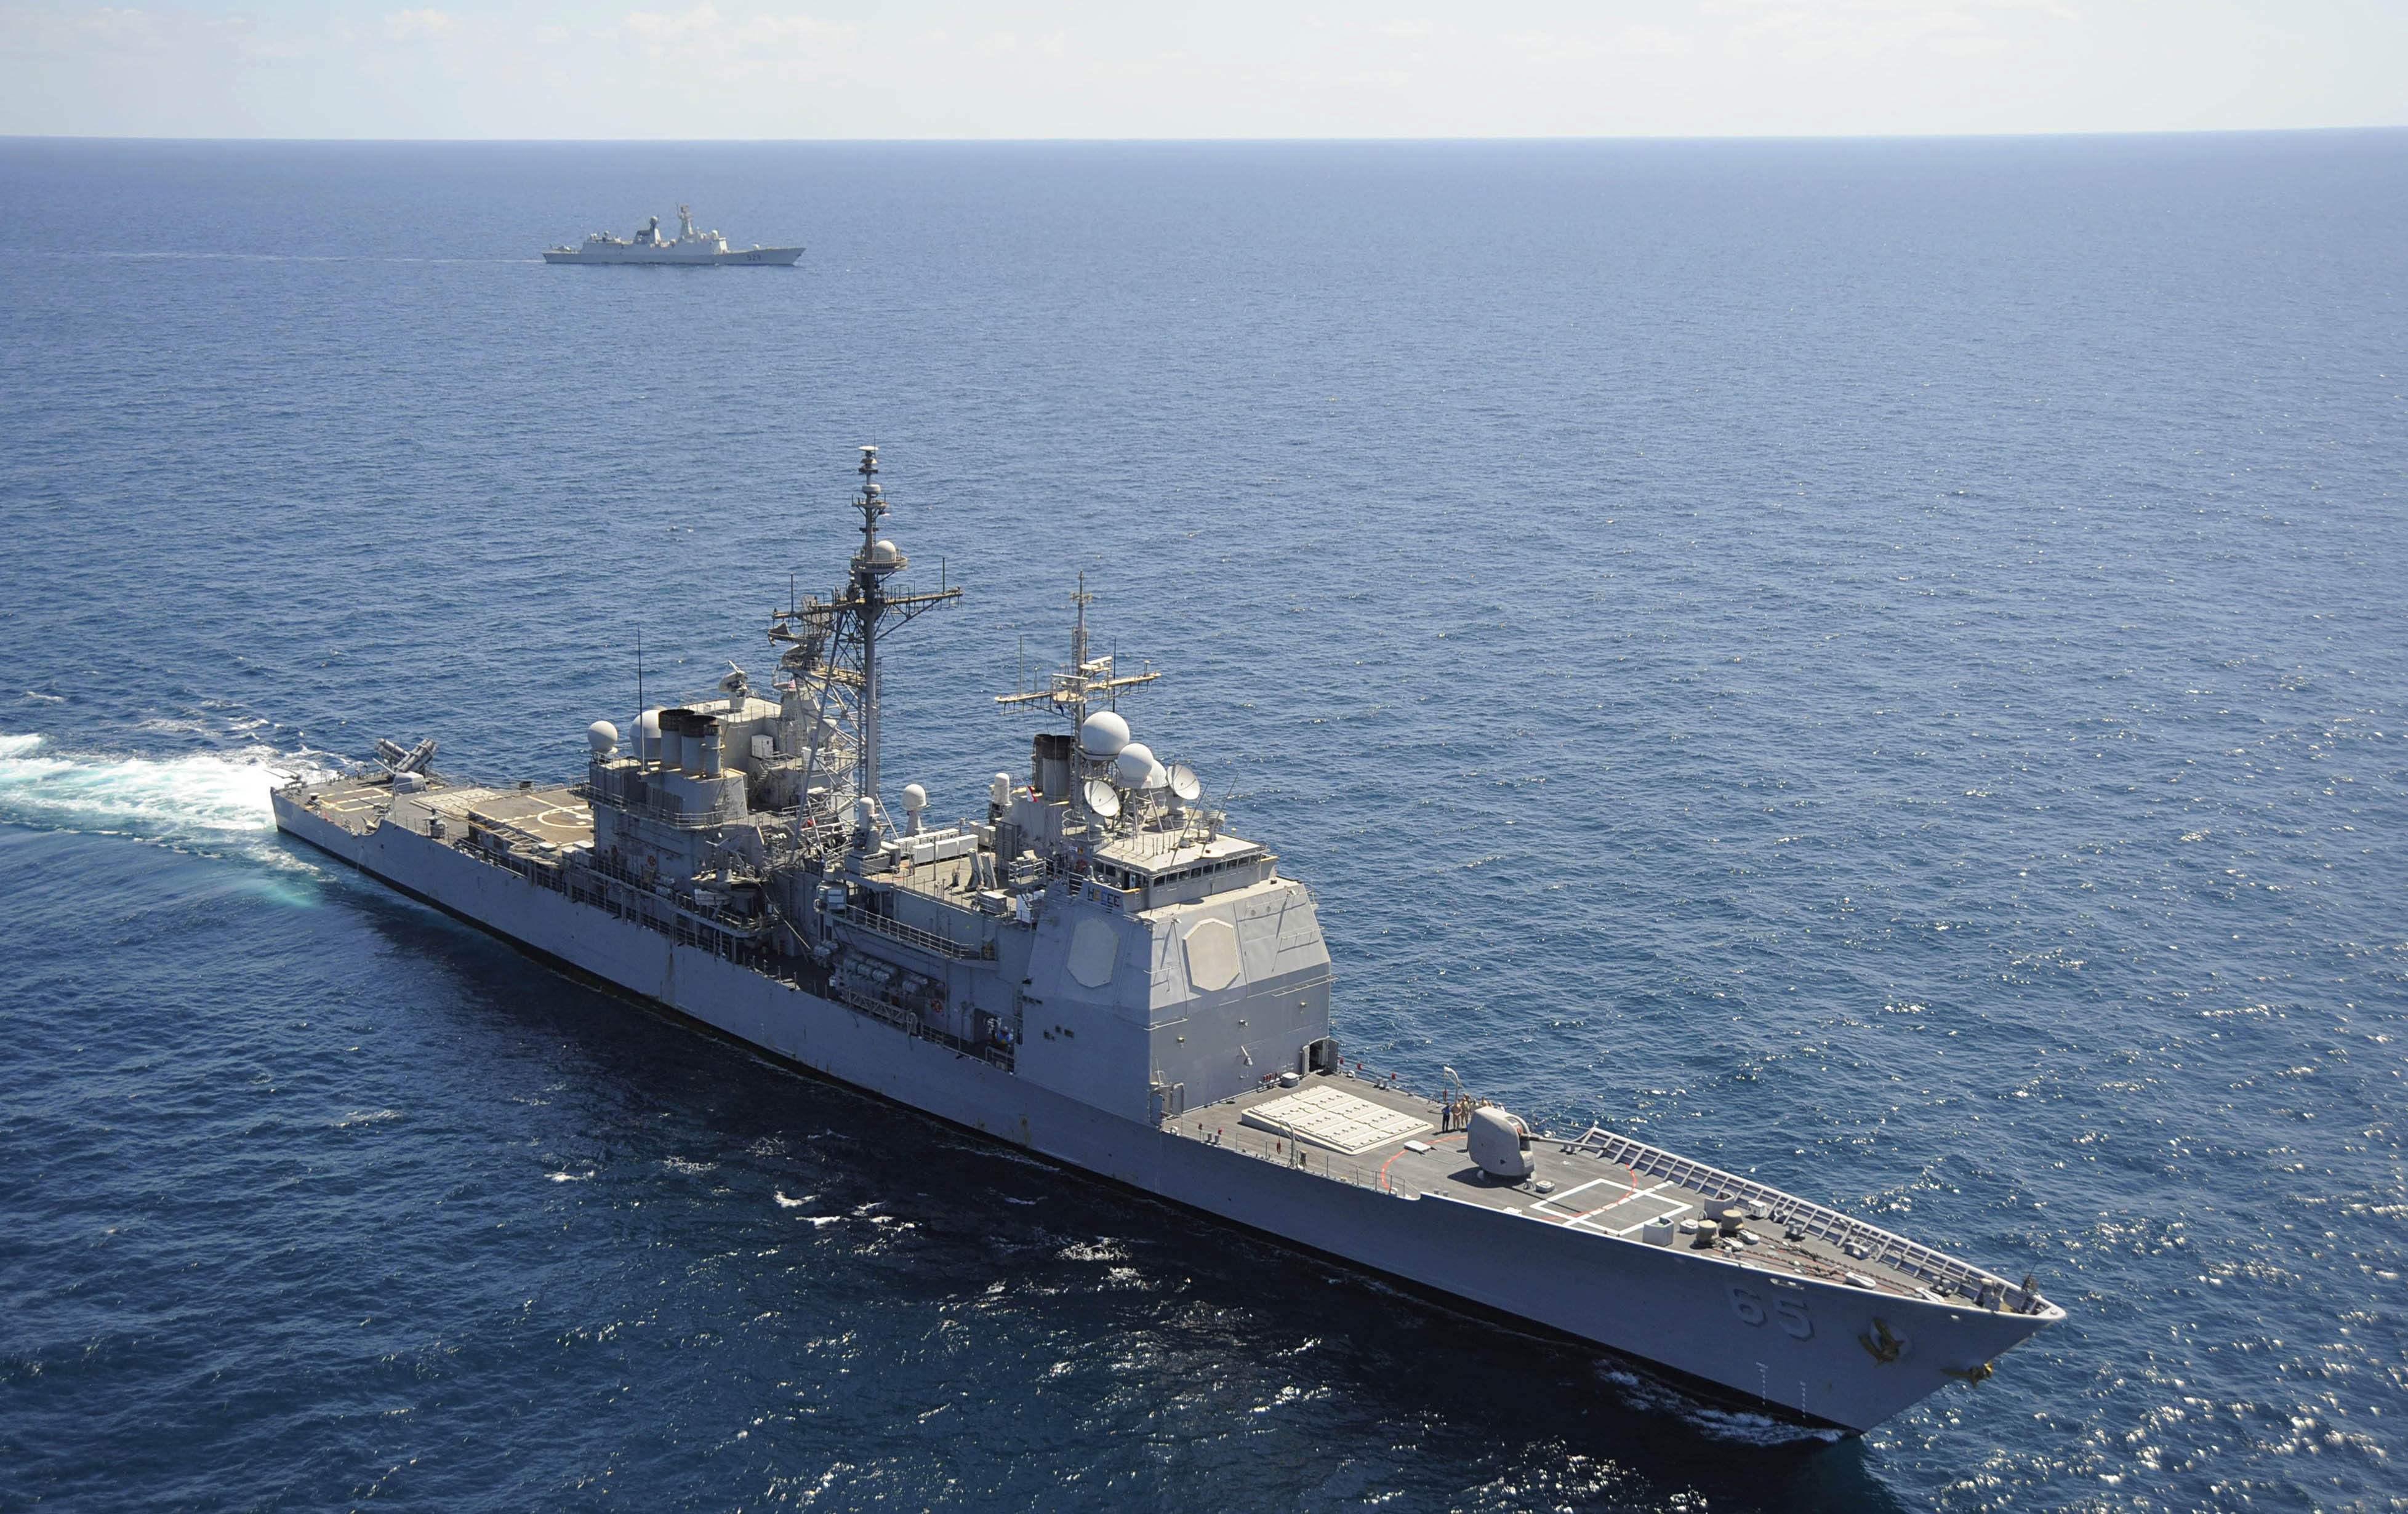 美海军披露新驱：在伯克级基础上研发舰体更大火力更猛_凤凰网